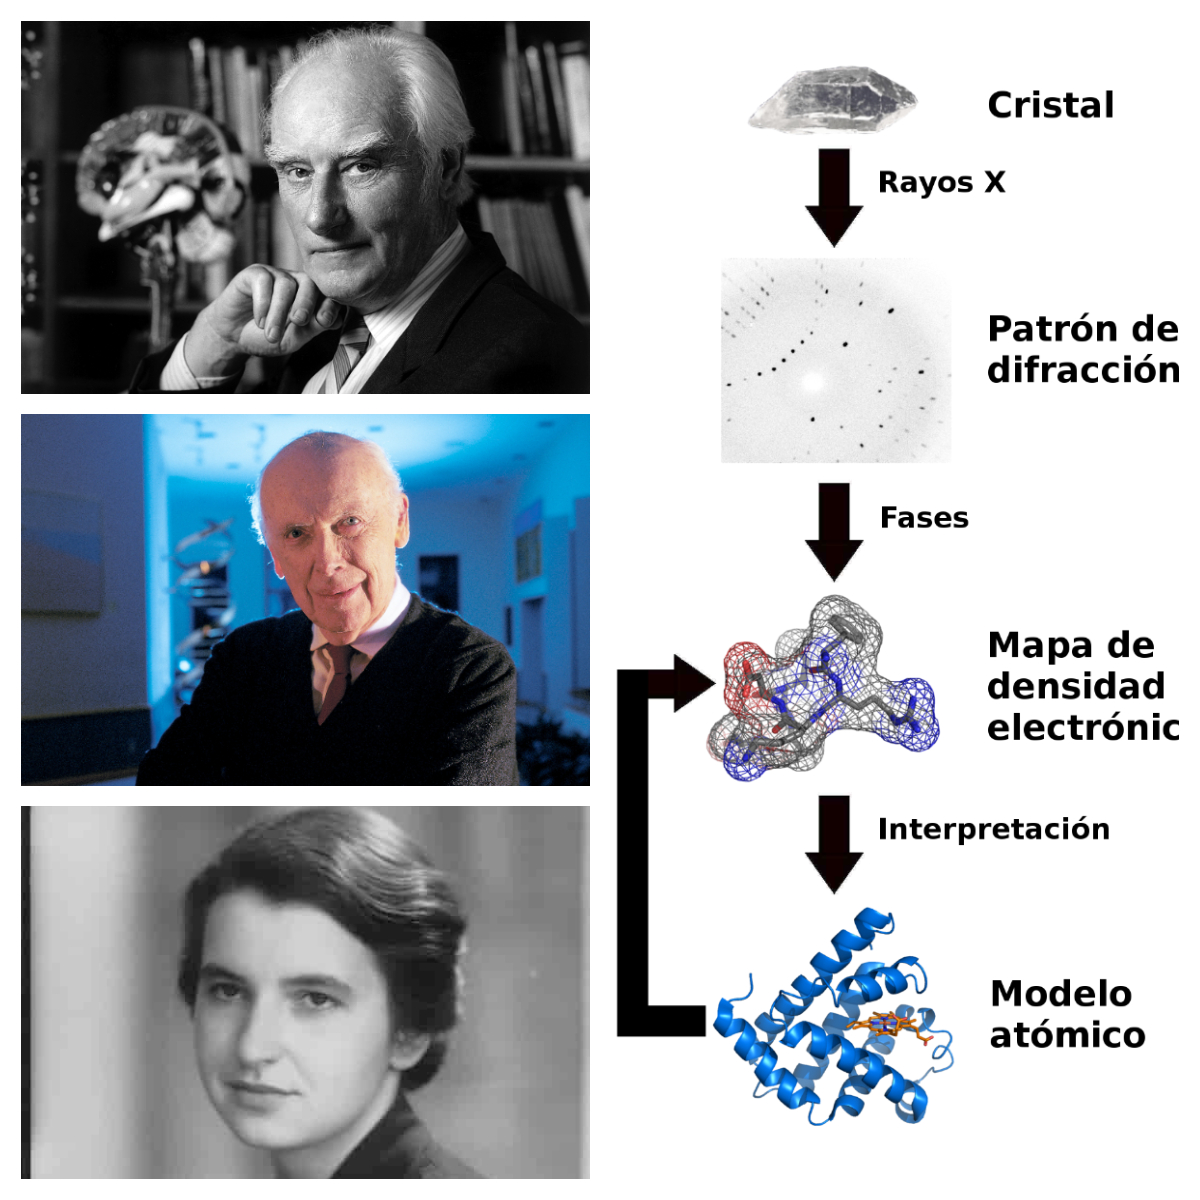 Retratos de Crick, Watson y Franklin. Esquema de difracción de los rayos x para estudiar la estructura de un cristal